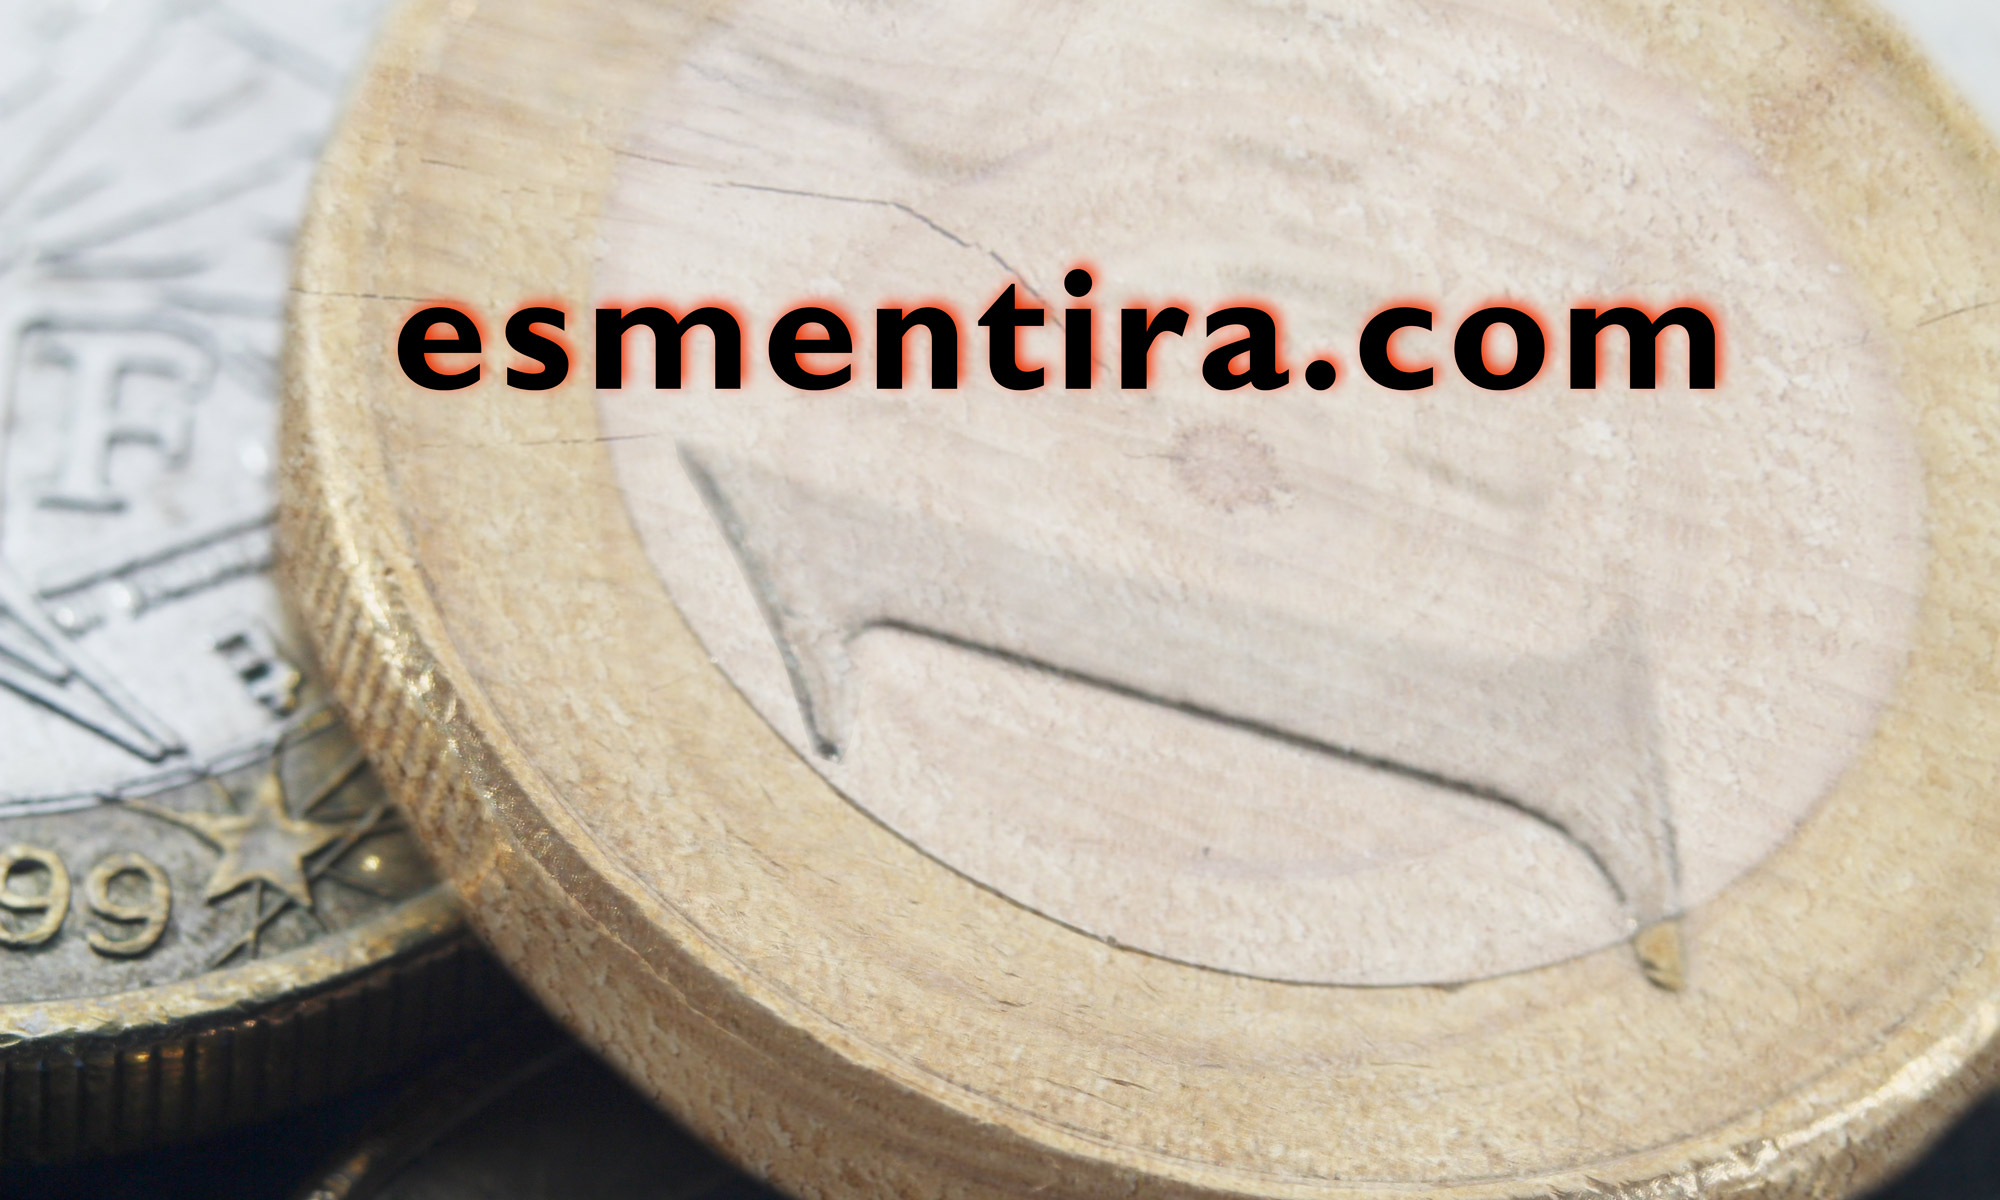 esmentira.com euro de madera